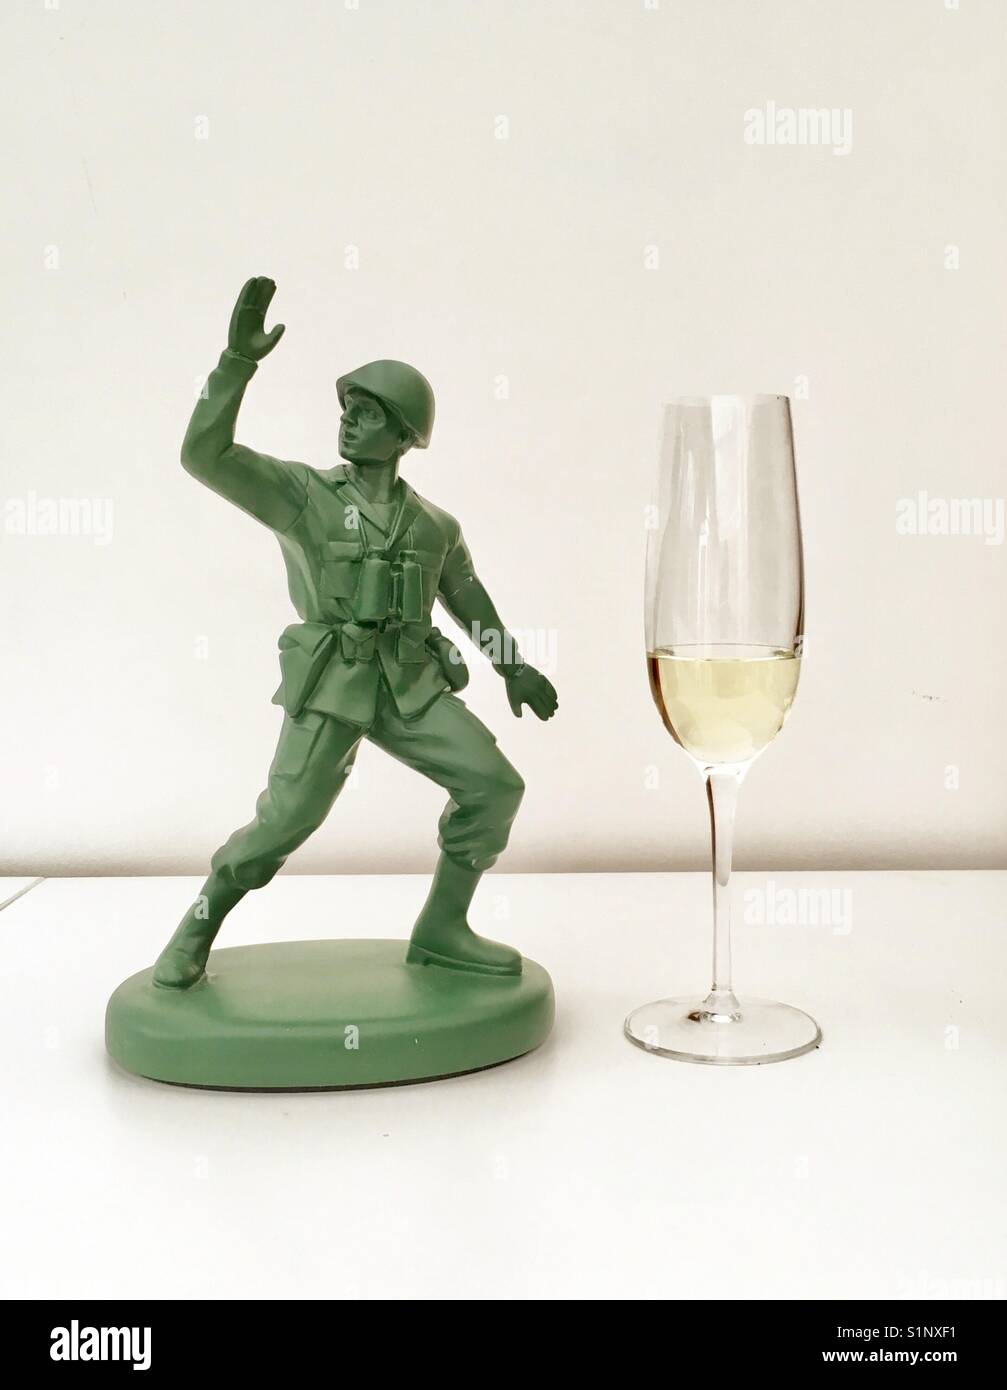 Soldado de juguete y champagne Foto de stock